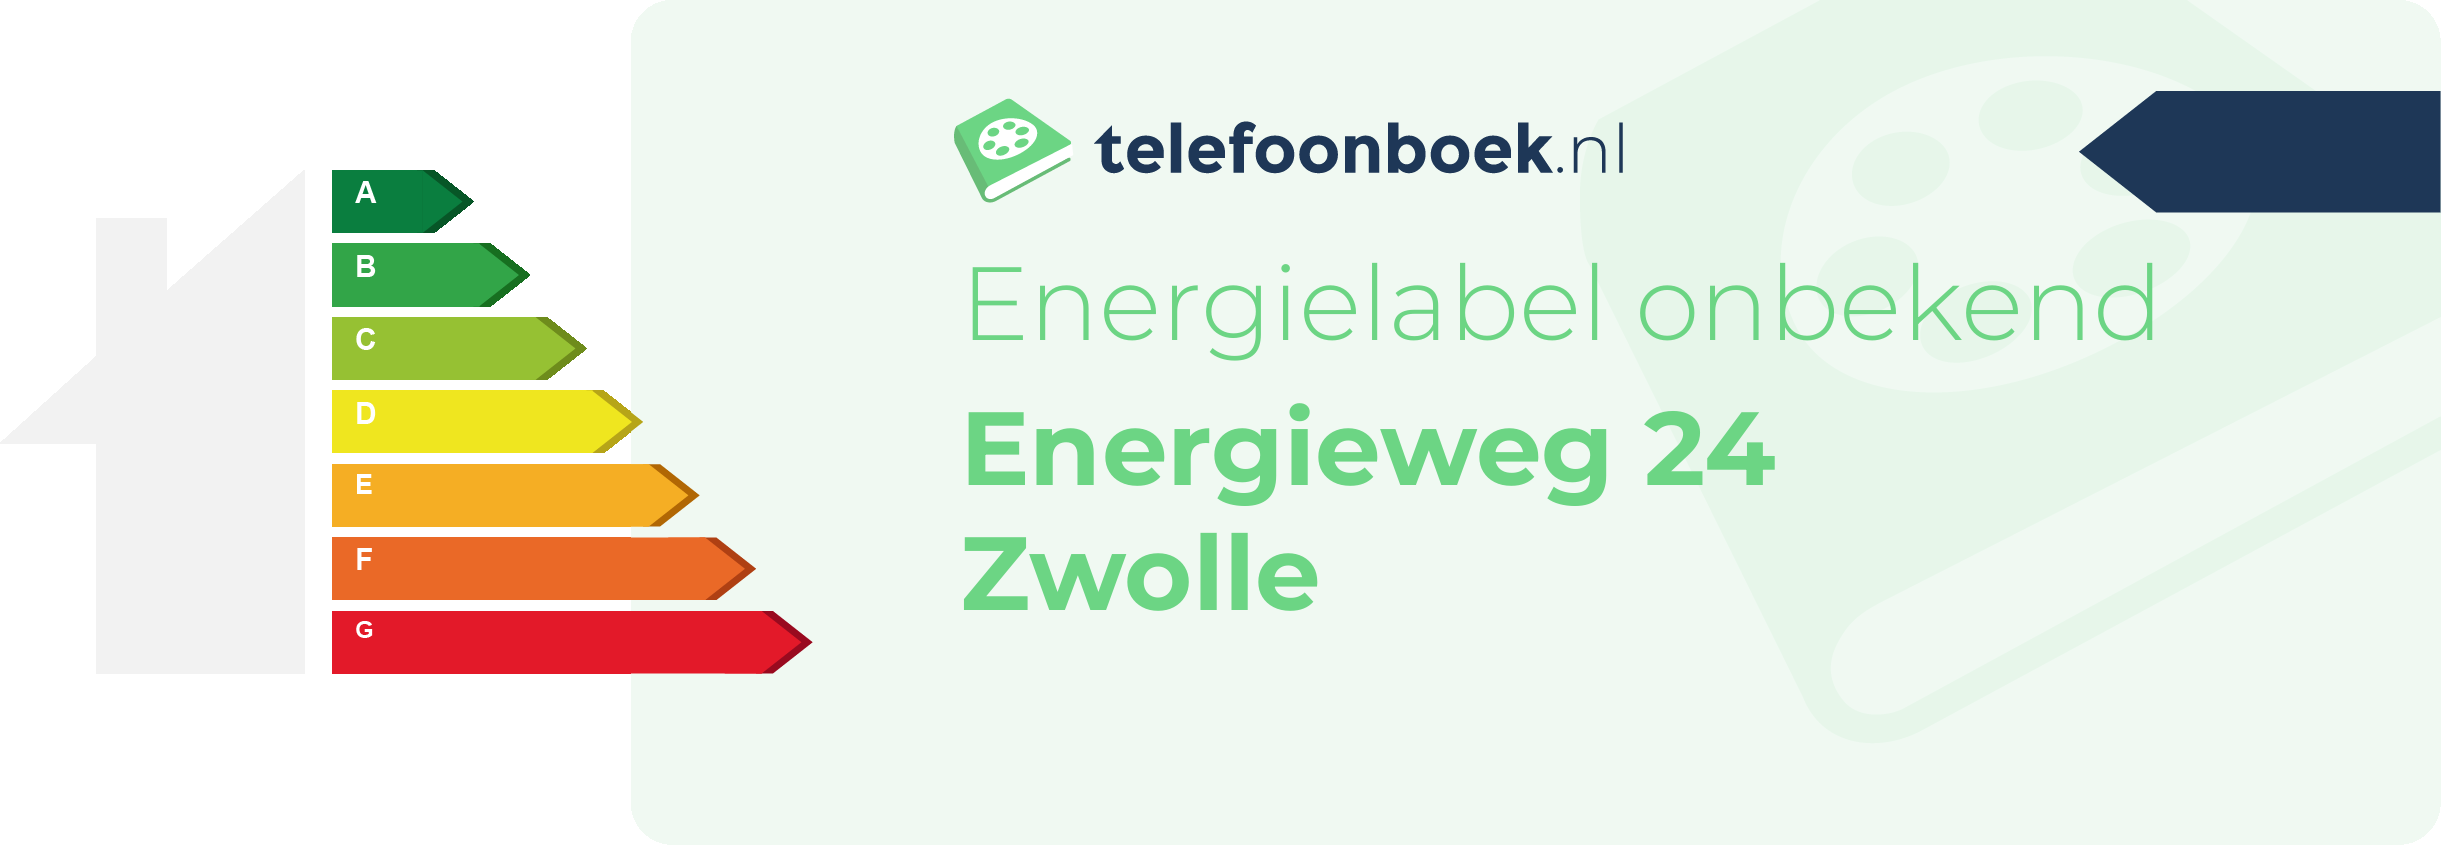 Energielabel Energieweg 24 Zwolle